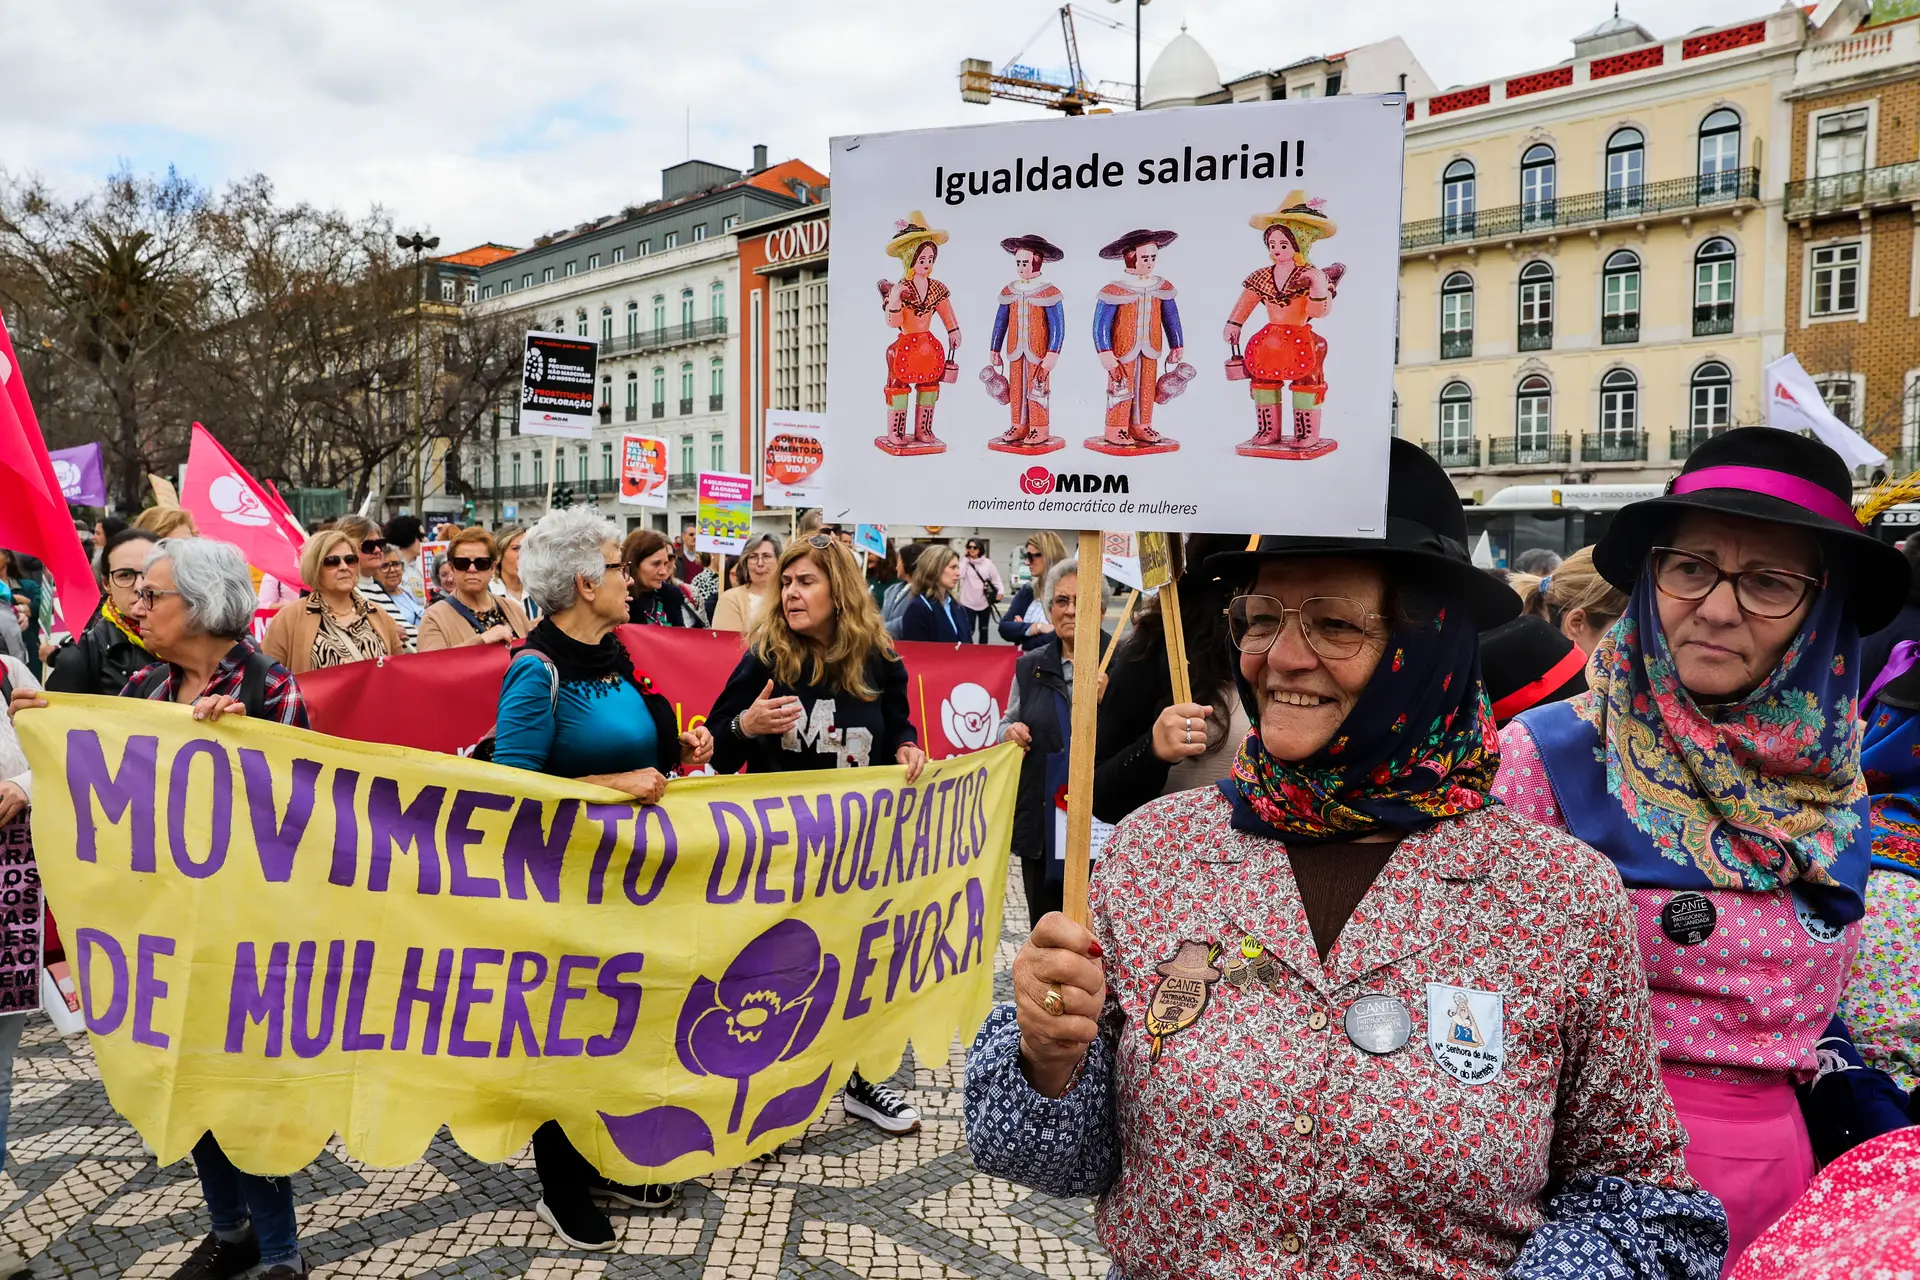 Milhares manifestam-se em Lisboa pelos direitos das mulheres